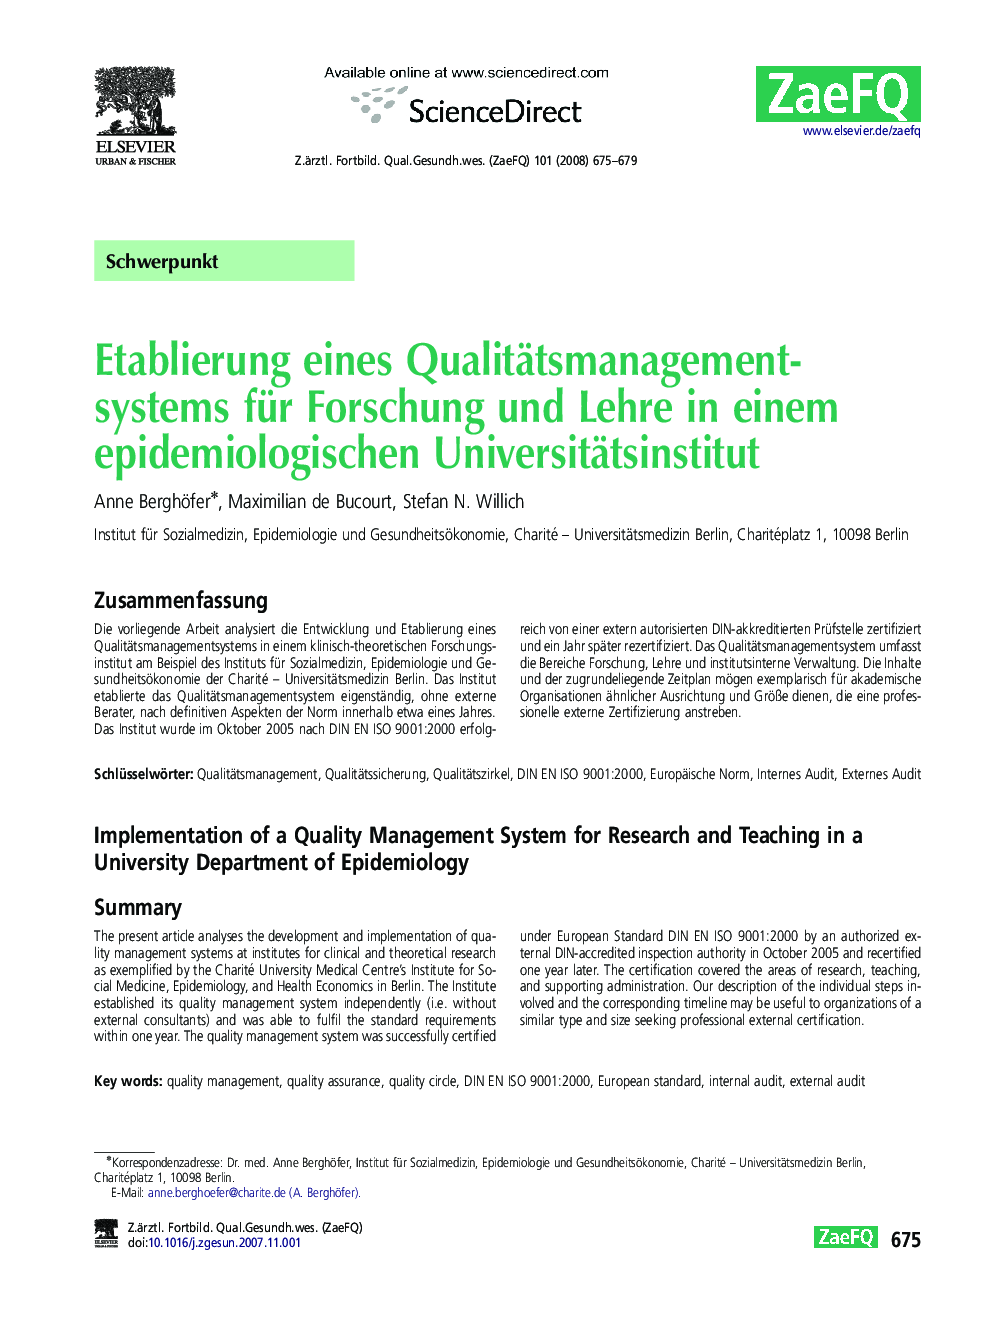 Etablierung eines Qualitätsmanagementsystems für Forschung und Lehre in einem epidemiologischen Universitätsinstitut